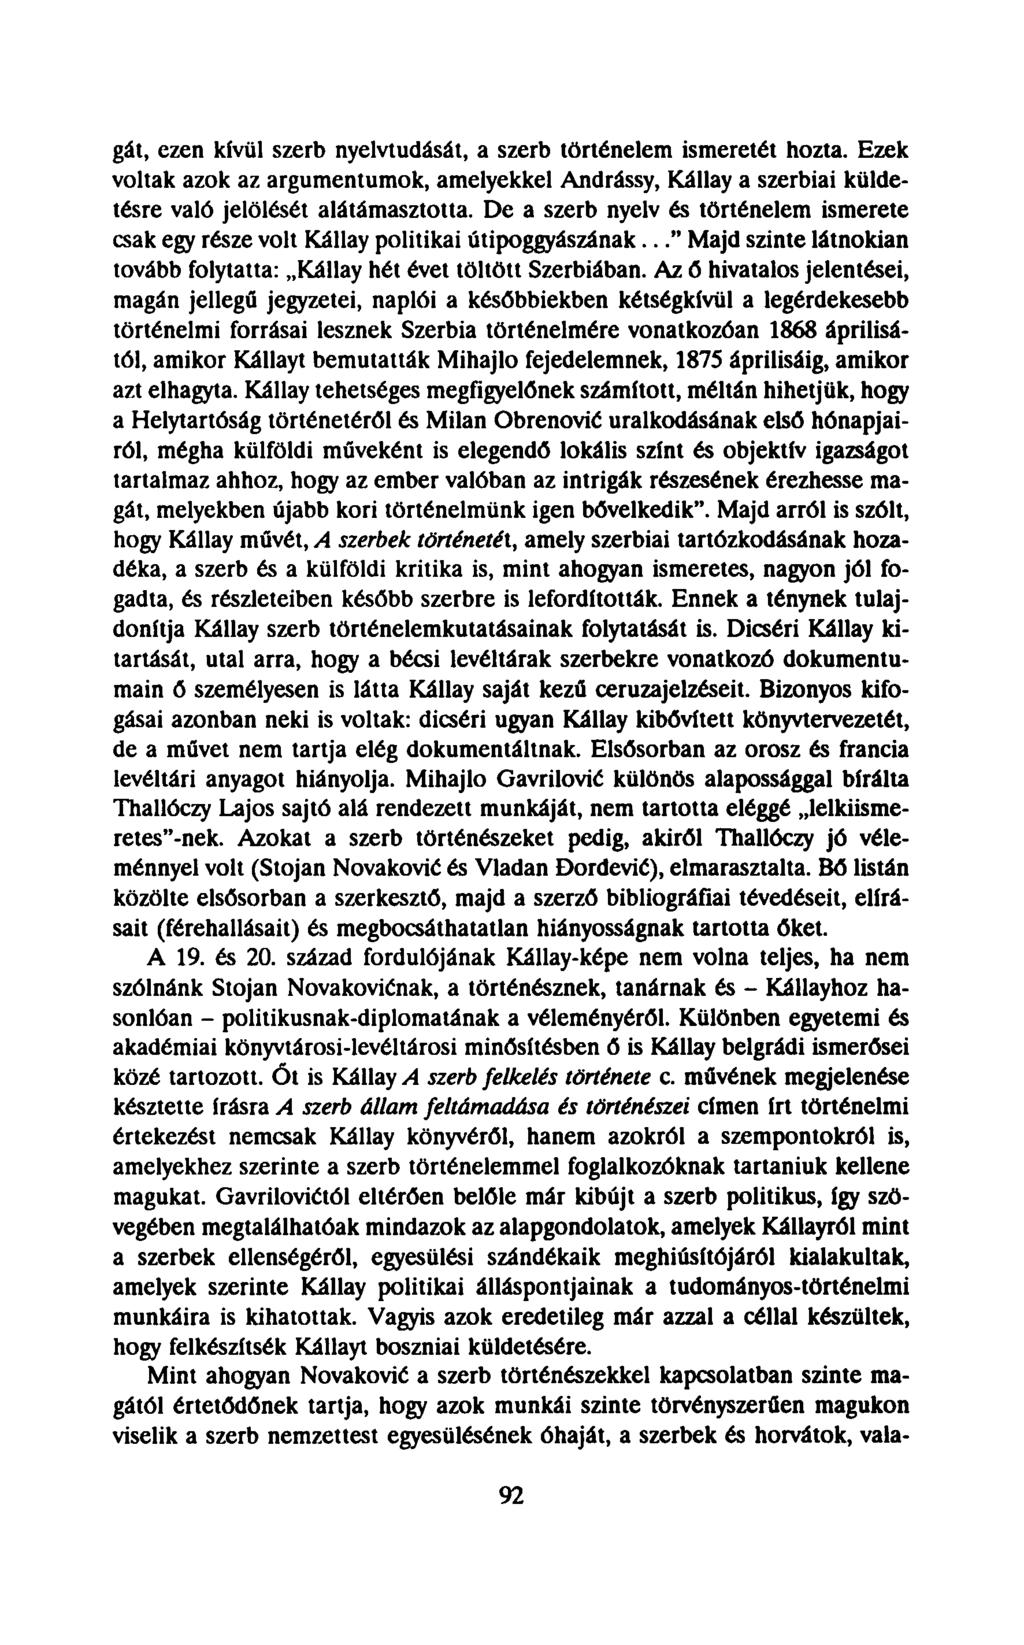 gát, ezen kívül szerb nyelvtudását, a szerb történelem ismeretét hozta. Ezek voltak azok az argumentumok, amelyekkel Andrássy, Kállay a szerbiai küldetésre való jelölését alátámasztotta.